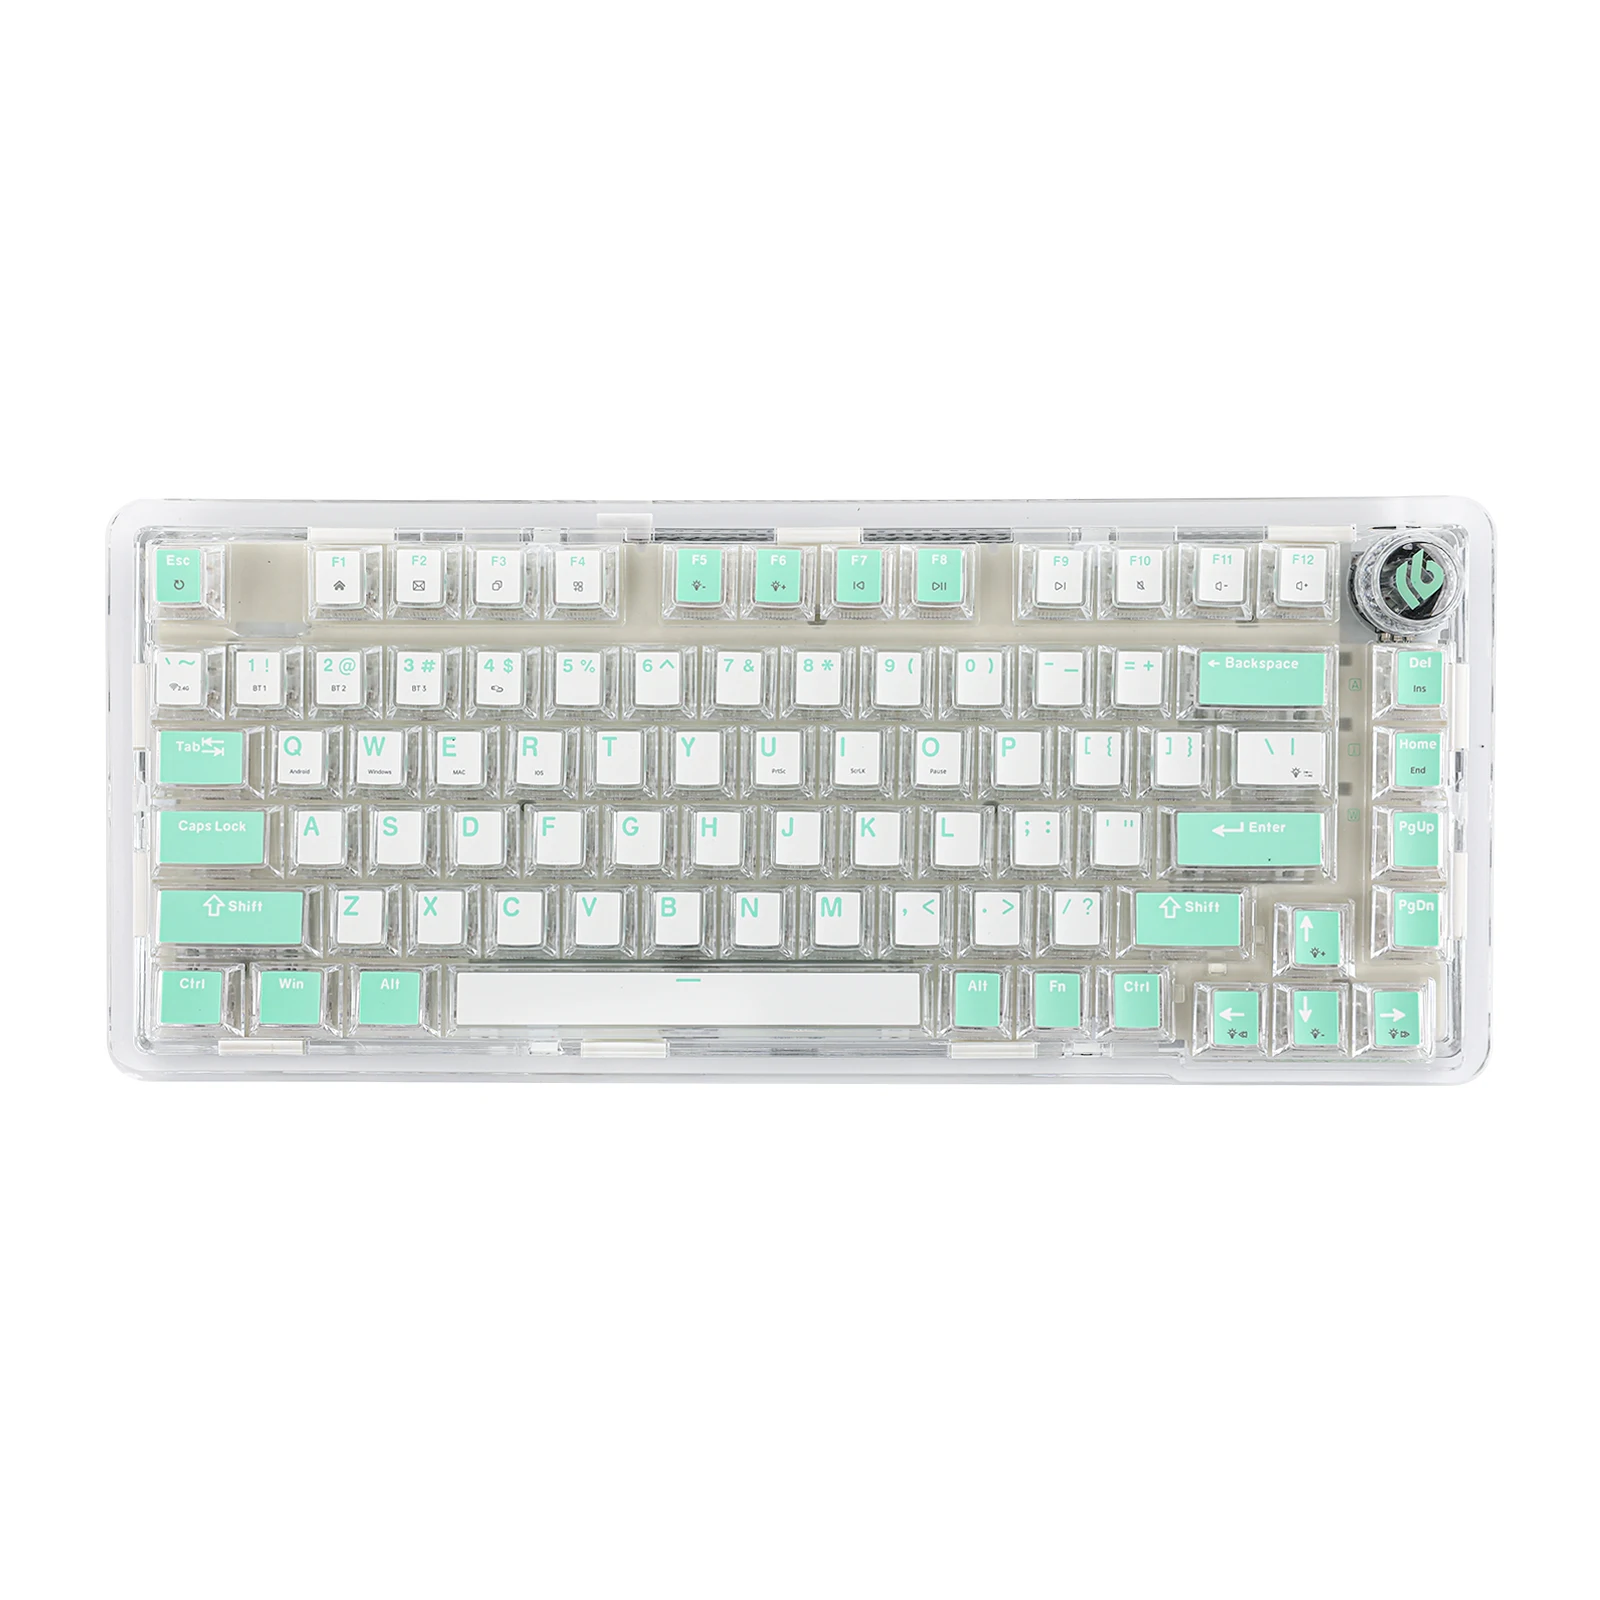 GMK+ Mint Full Mechanical Keyboard